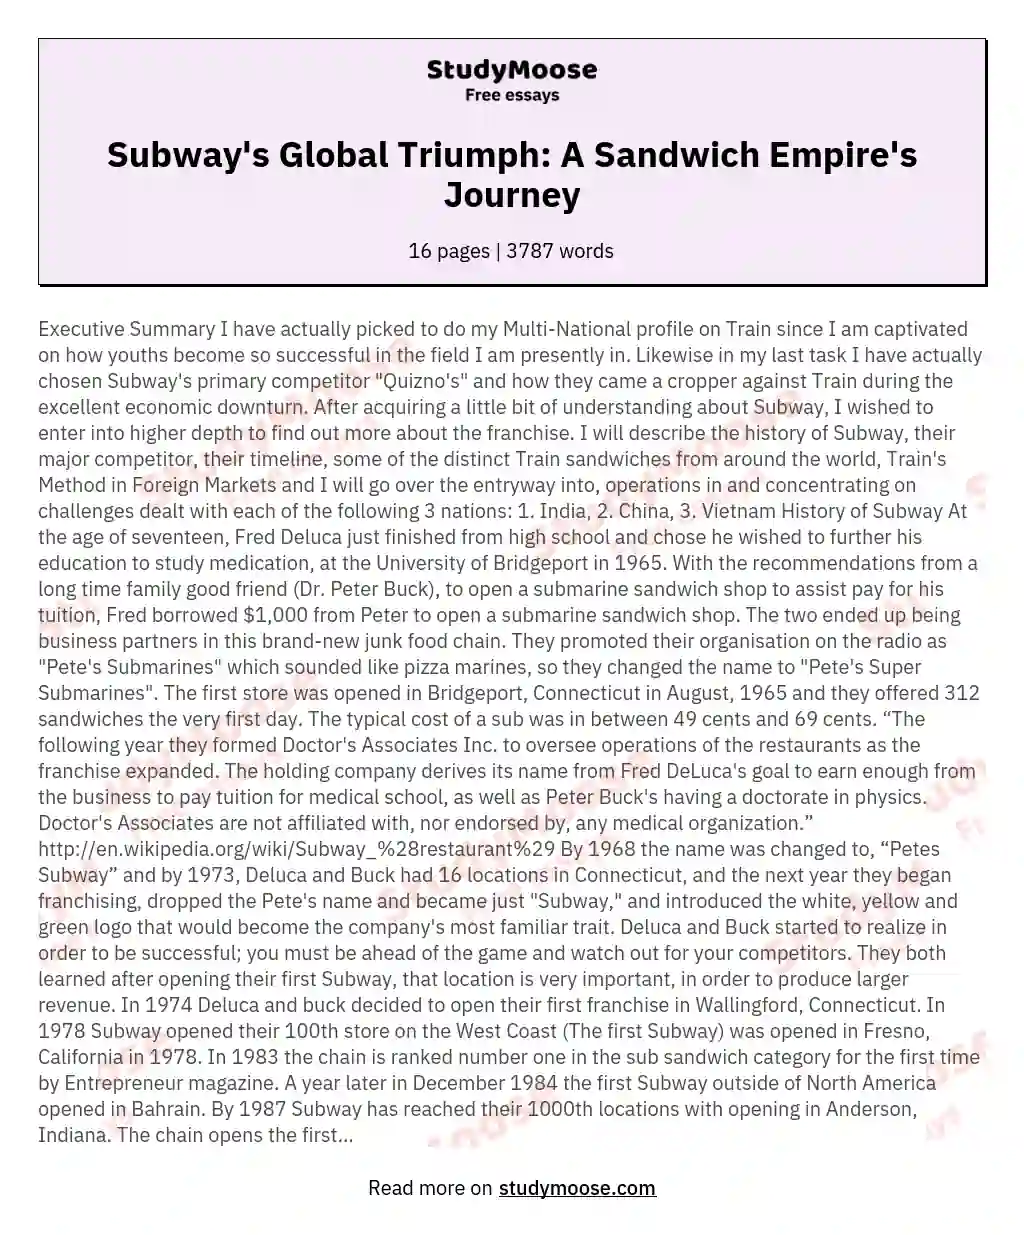 Subway's Global Triumph: A Sandwich Empire's Journey essay